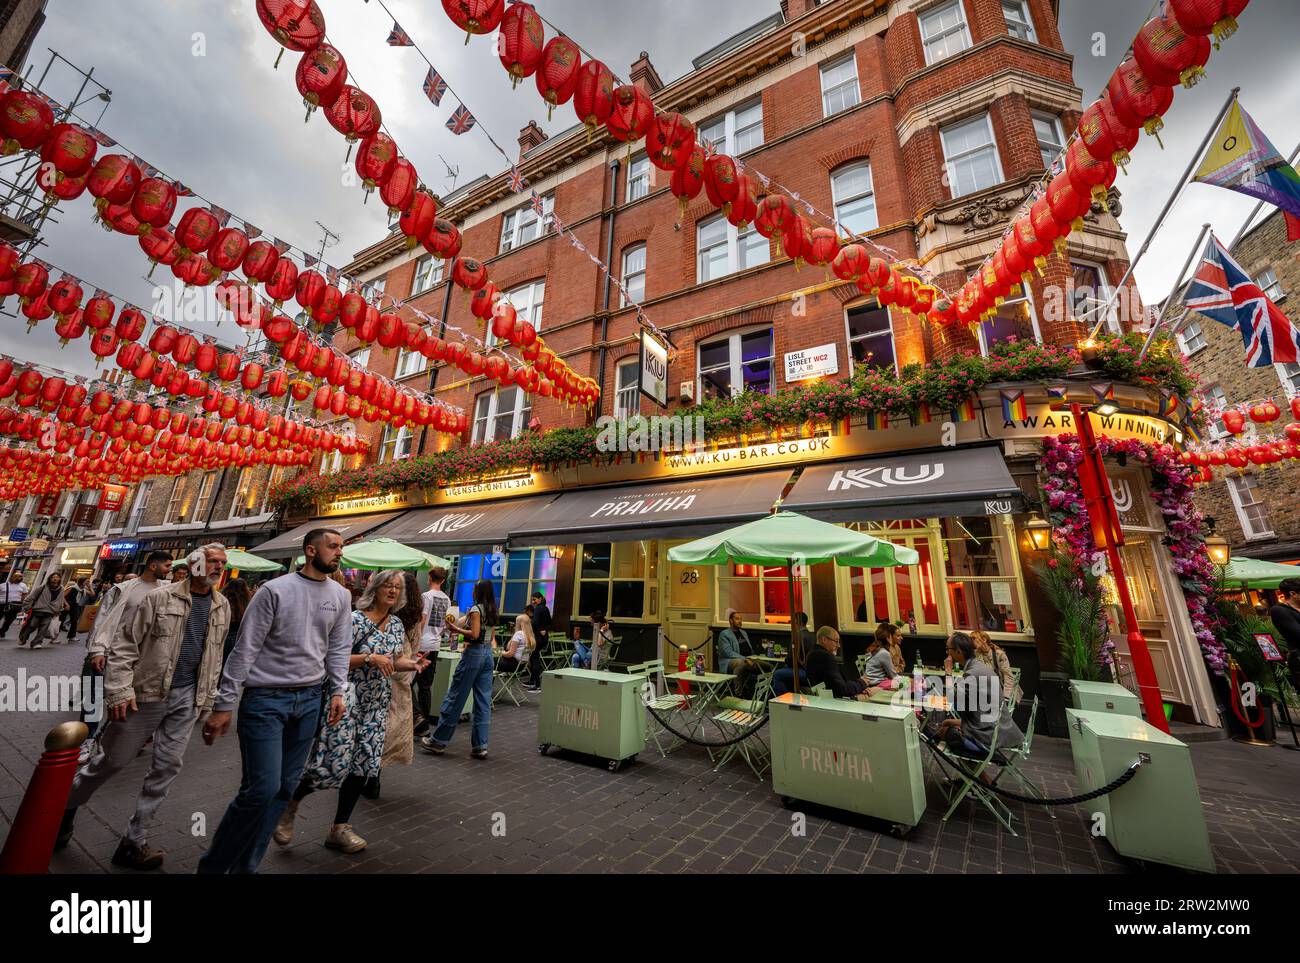 London, UK: Ku bar, an award-winning gay bar on Lisle Street in London's Chinatown. Stock Photo